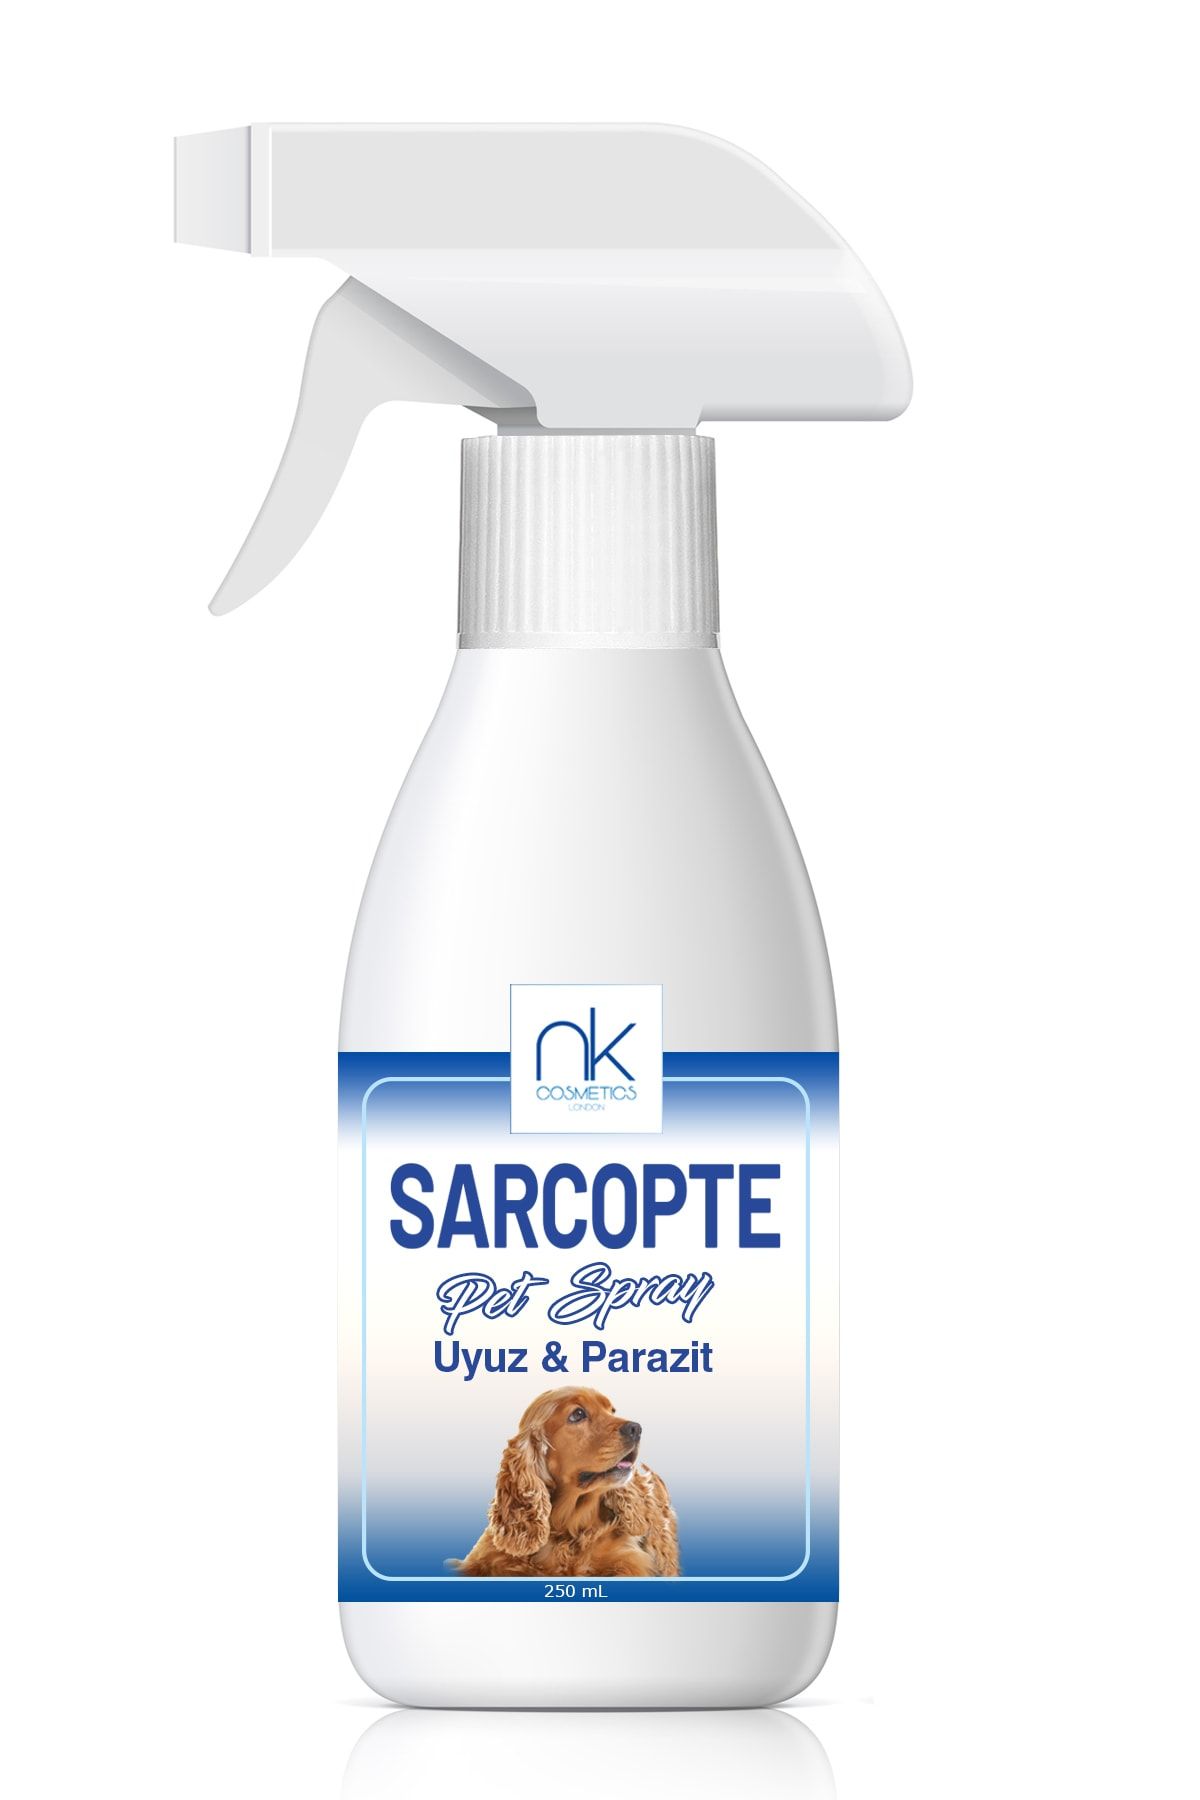 NK Cosmetics Sarcopte Pet Spray Uyuz Kaşıntı Ve Parazit Giderici Köpeklere Özel - 250 ml